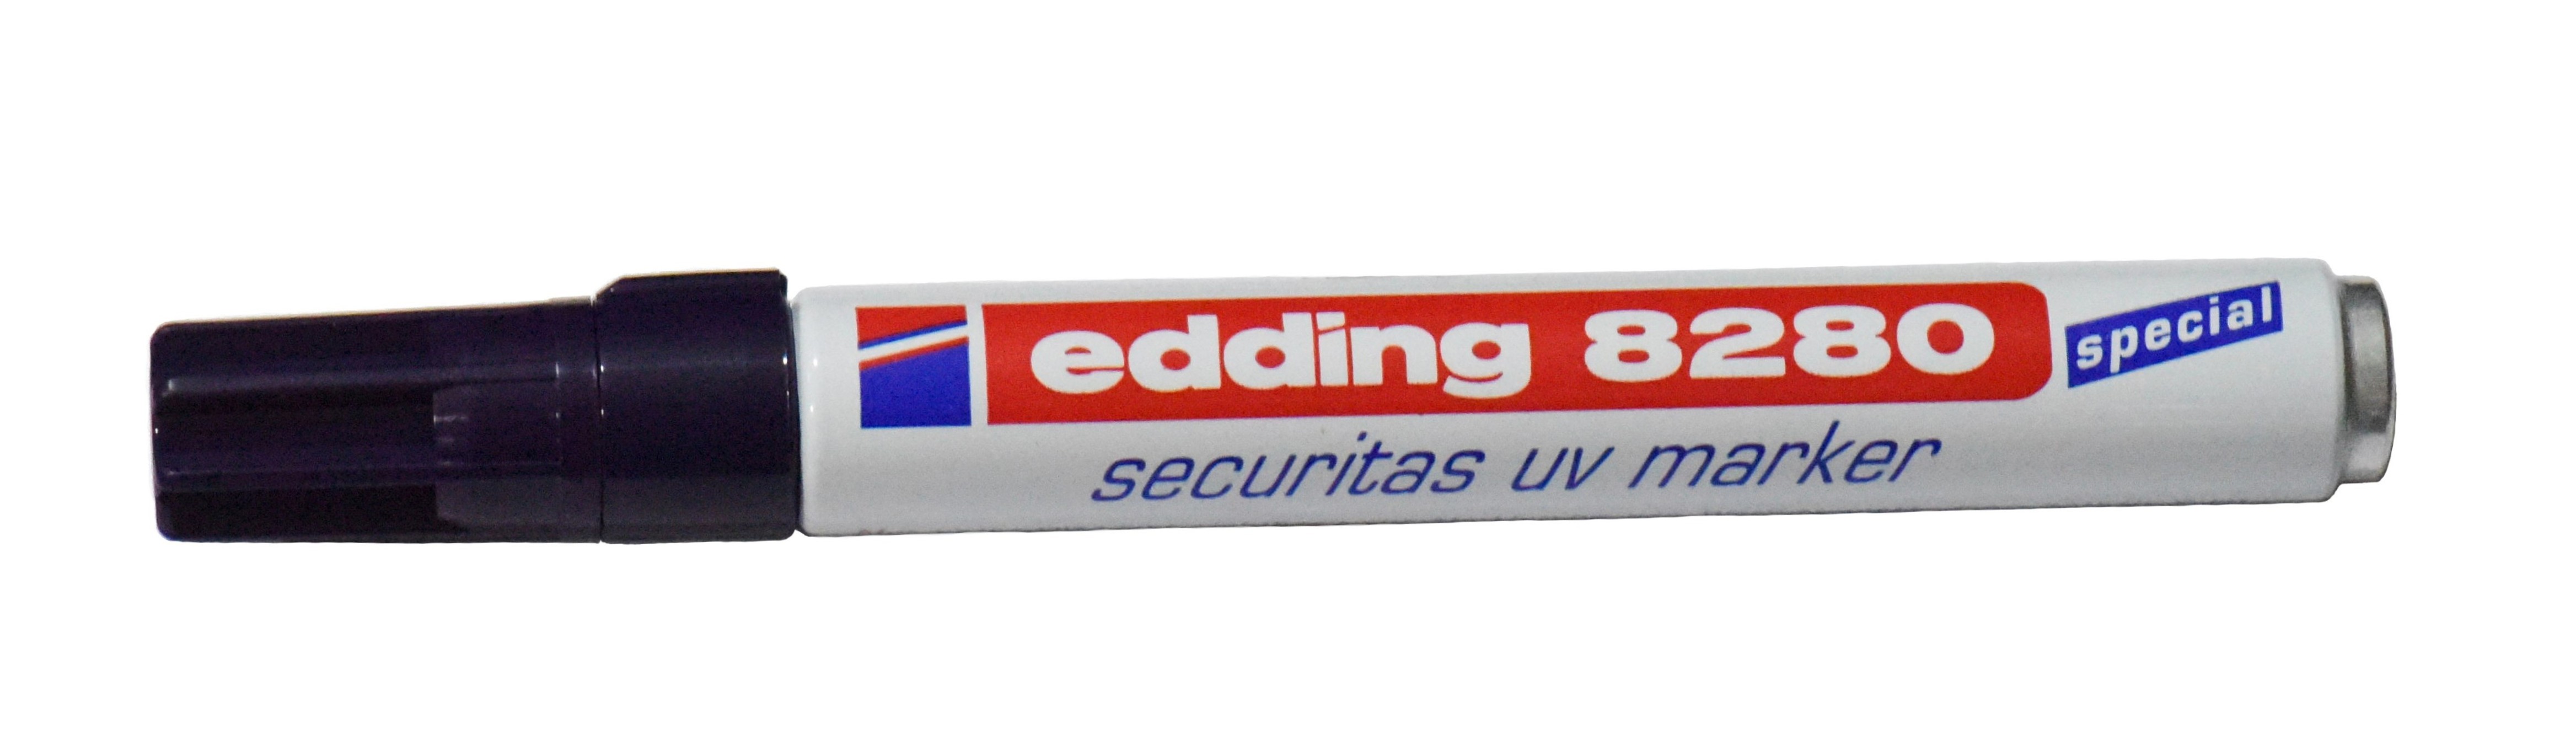 Edding 8280. Маркер промышленный синий e-3000 Edding. Ультрафиолетовый маркер по металлу. Химический маркер. Маркер восковой